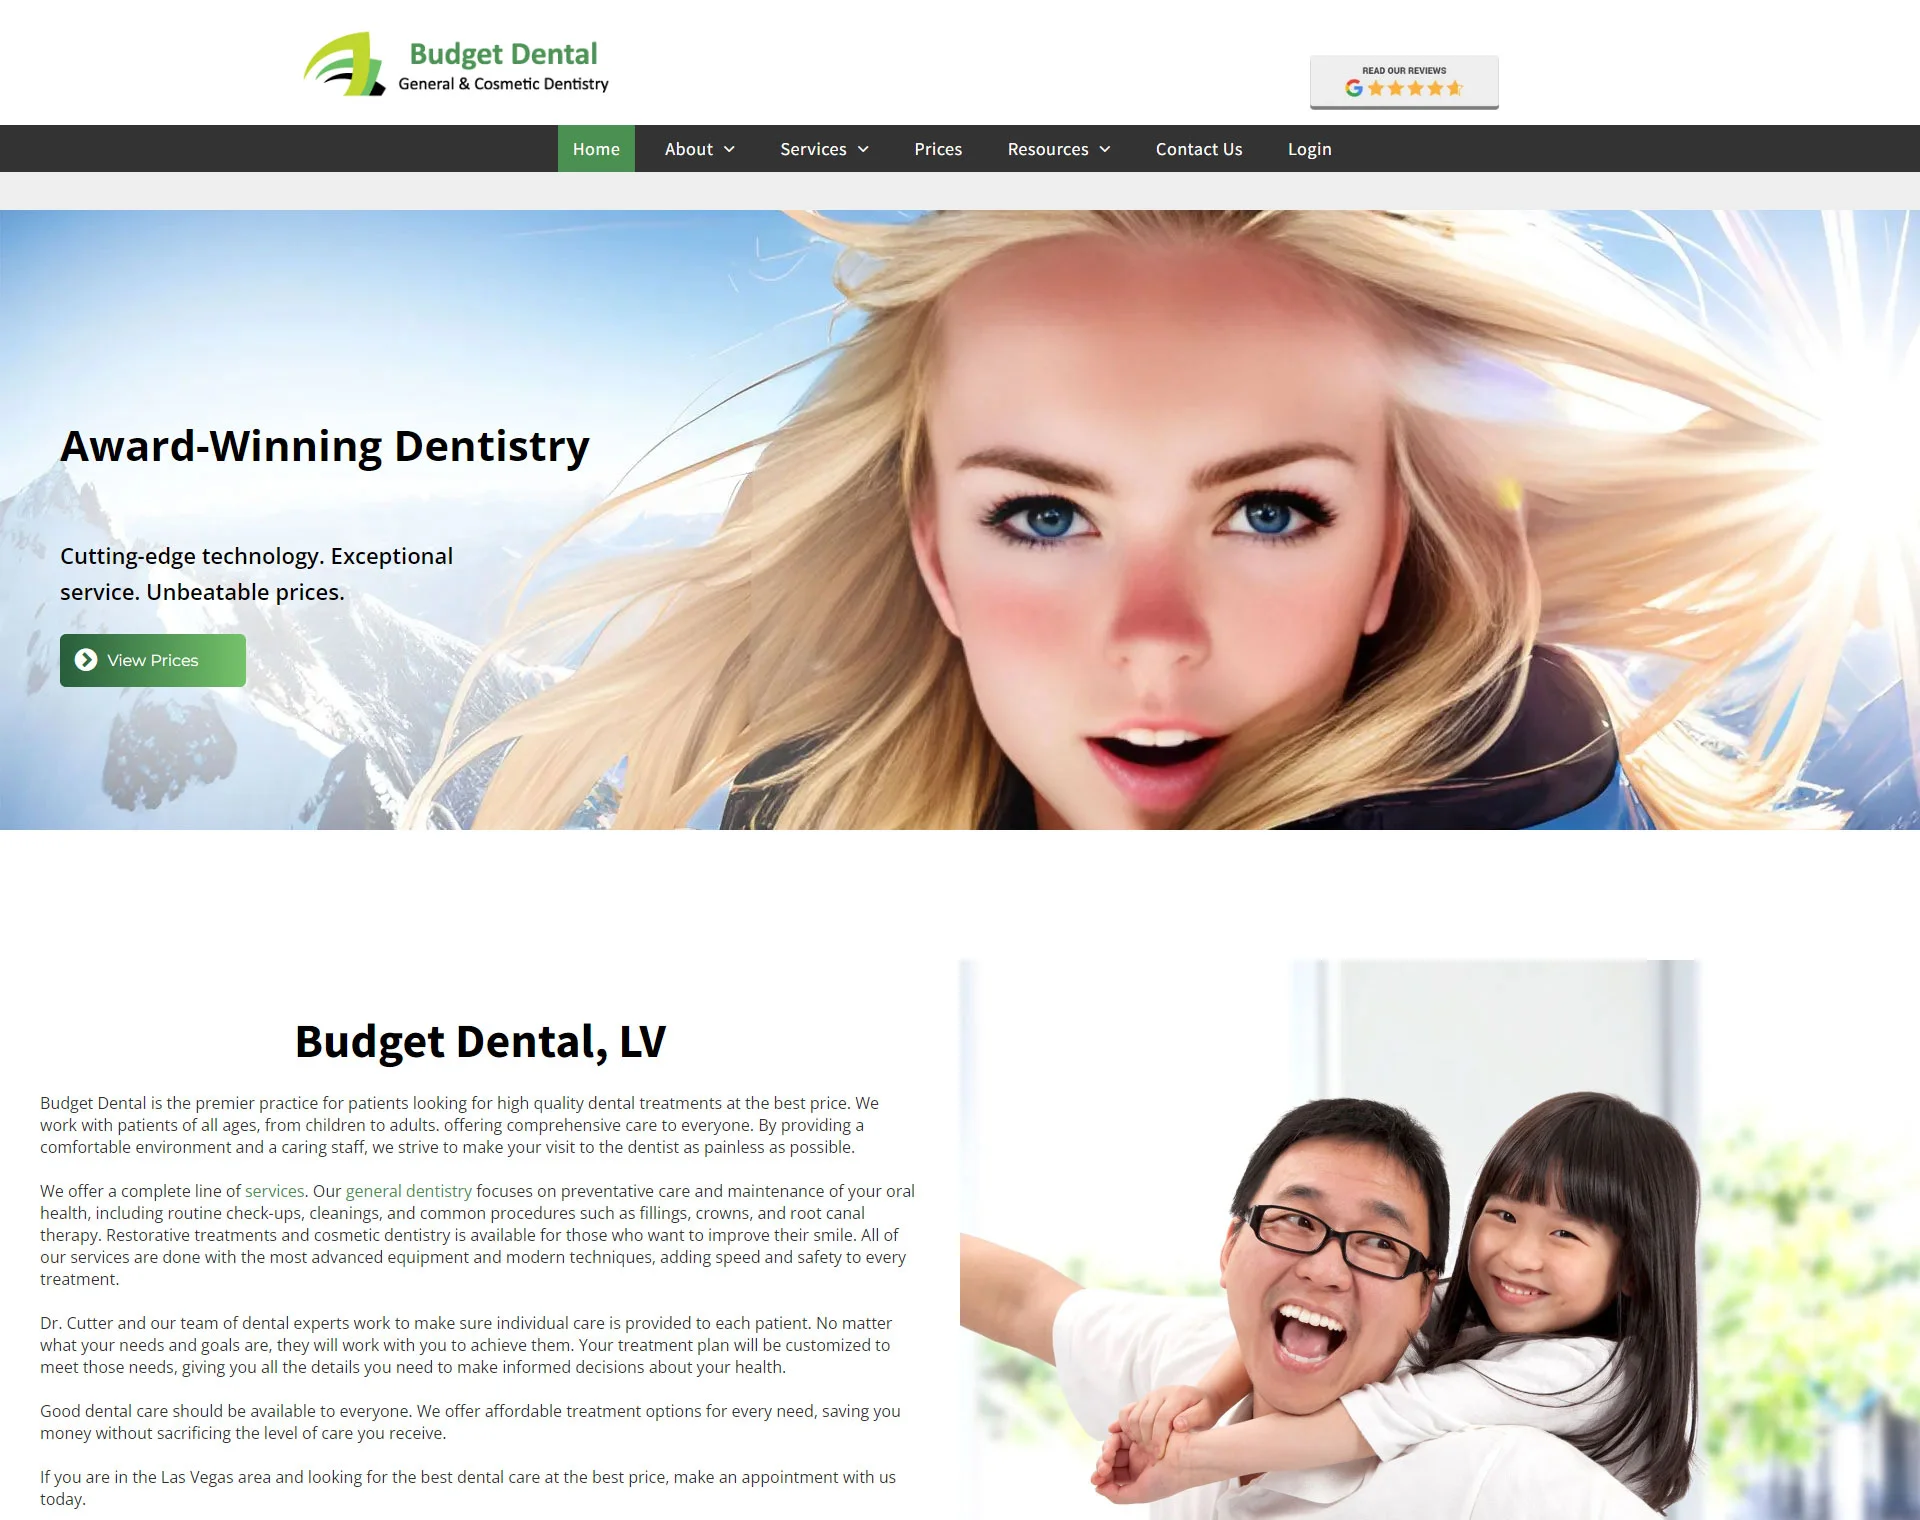 Budget Dental - responsive website development company